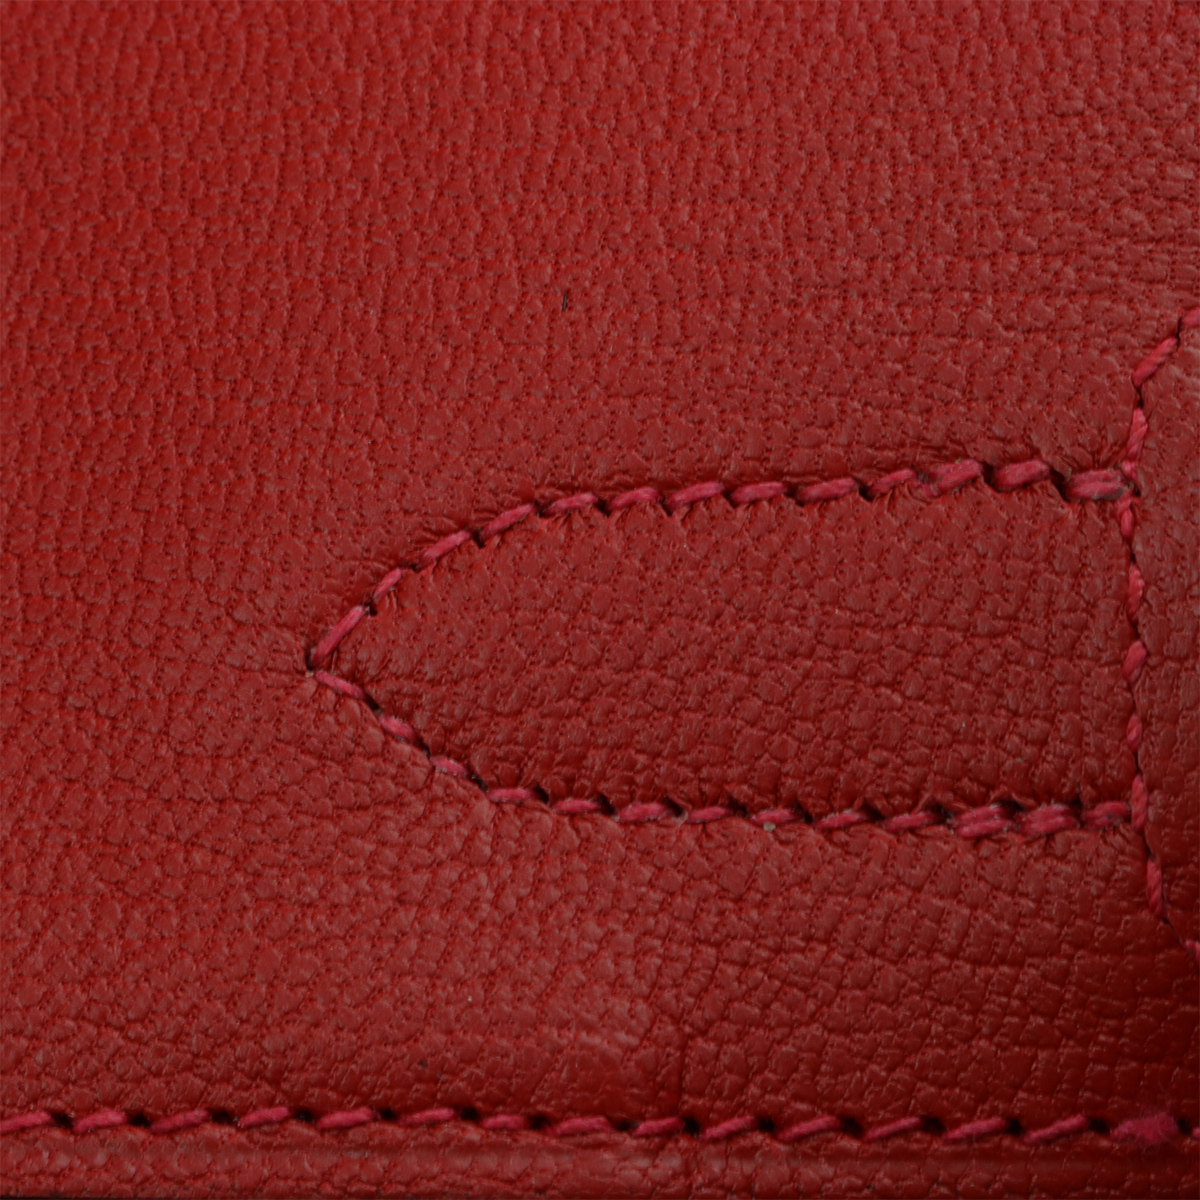 Hermès Birkin 30 Rouge Casaque Epsom Palladium Hardware PHW — The French  Hunter